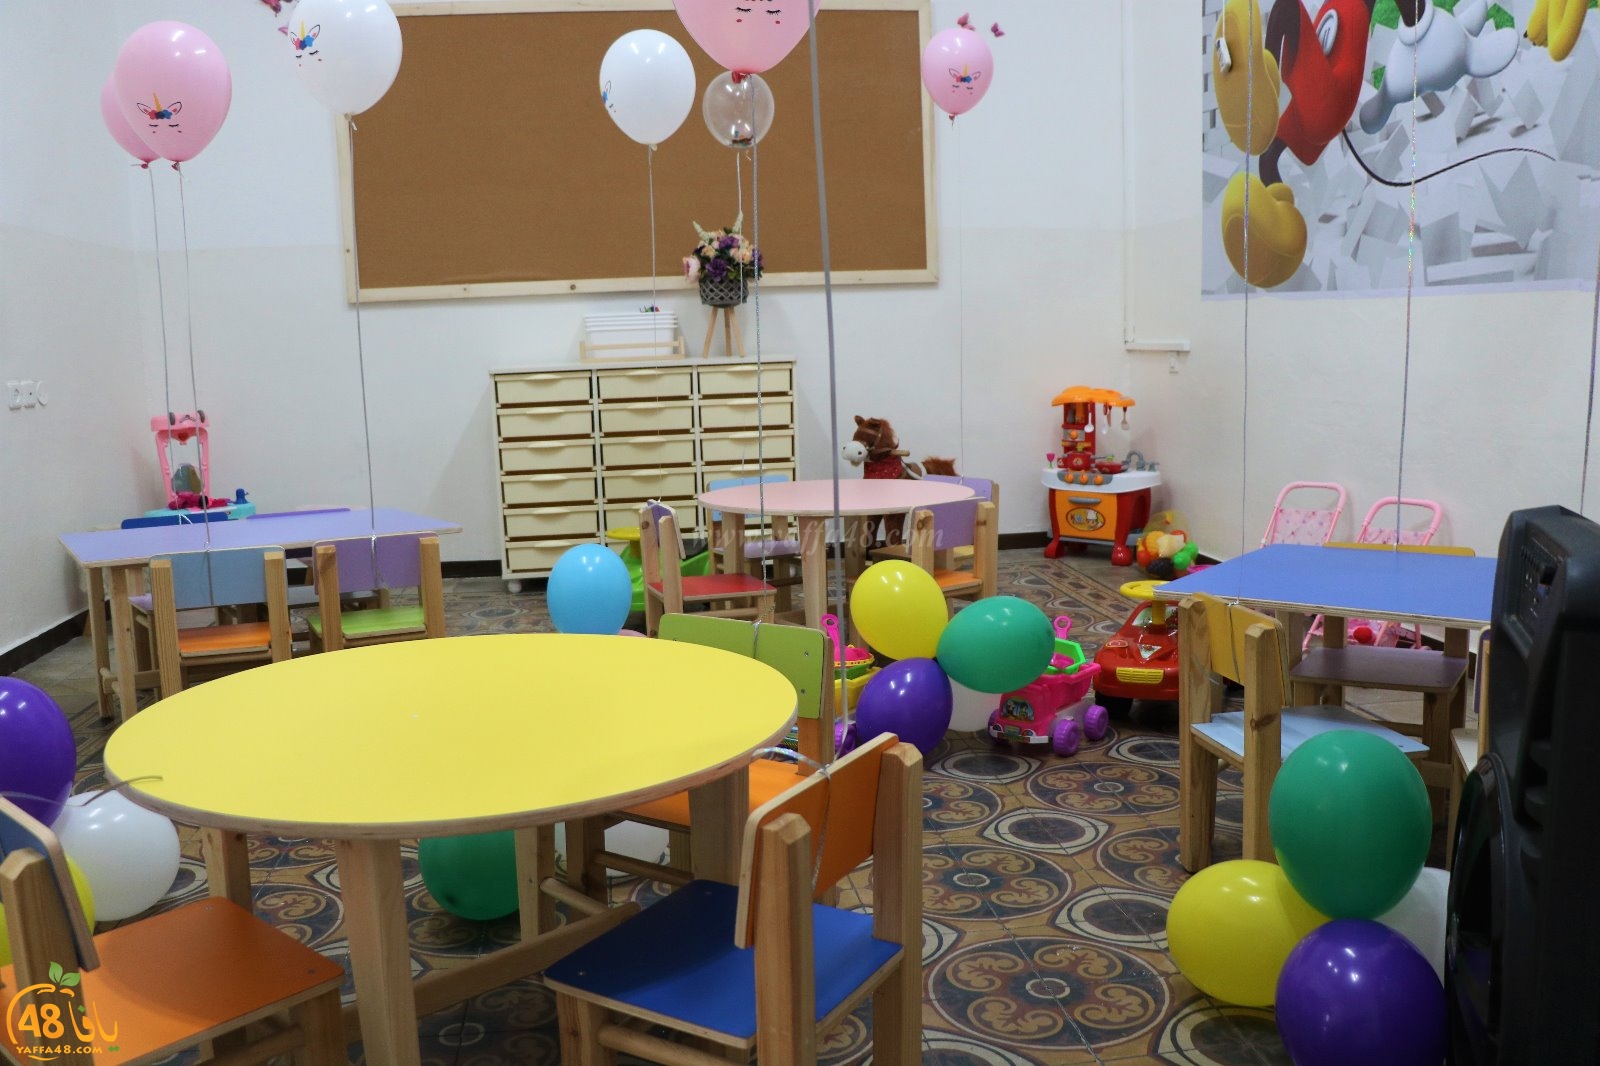 بالصور: افتتاح حضانة نبض بيافا باحتفال واستعراضات للأطفال